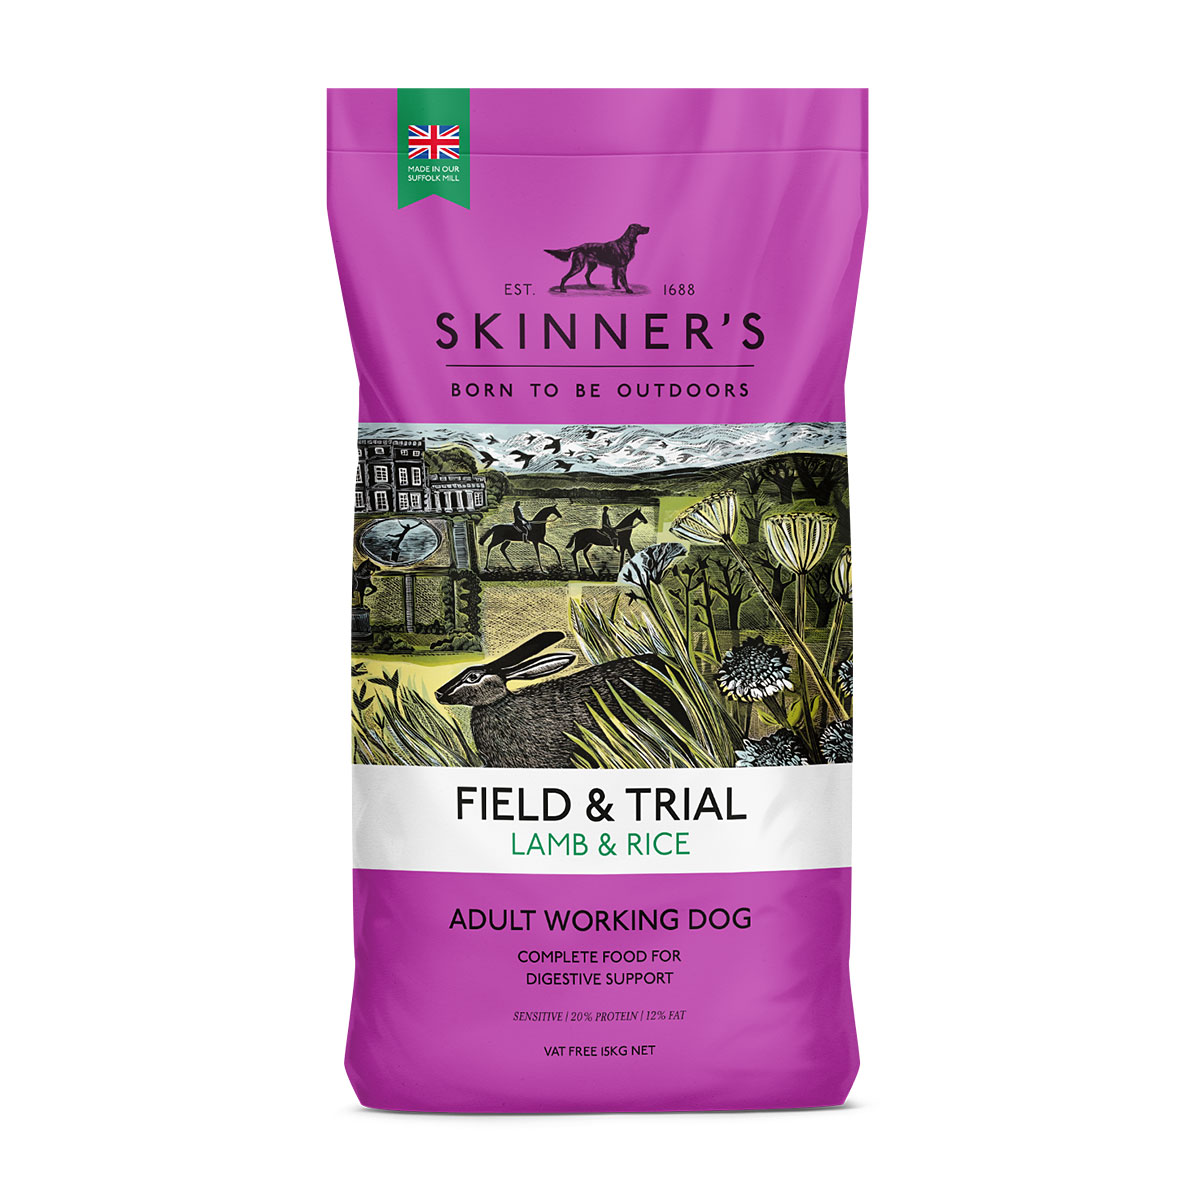 Skinners Field & Trial Lamb & Rice Bag